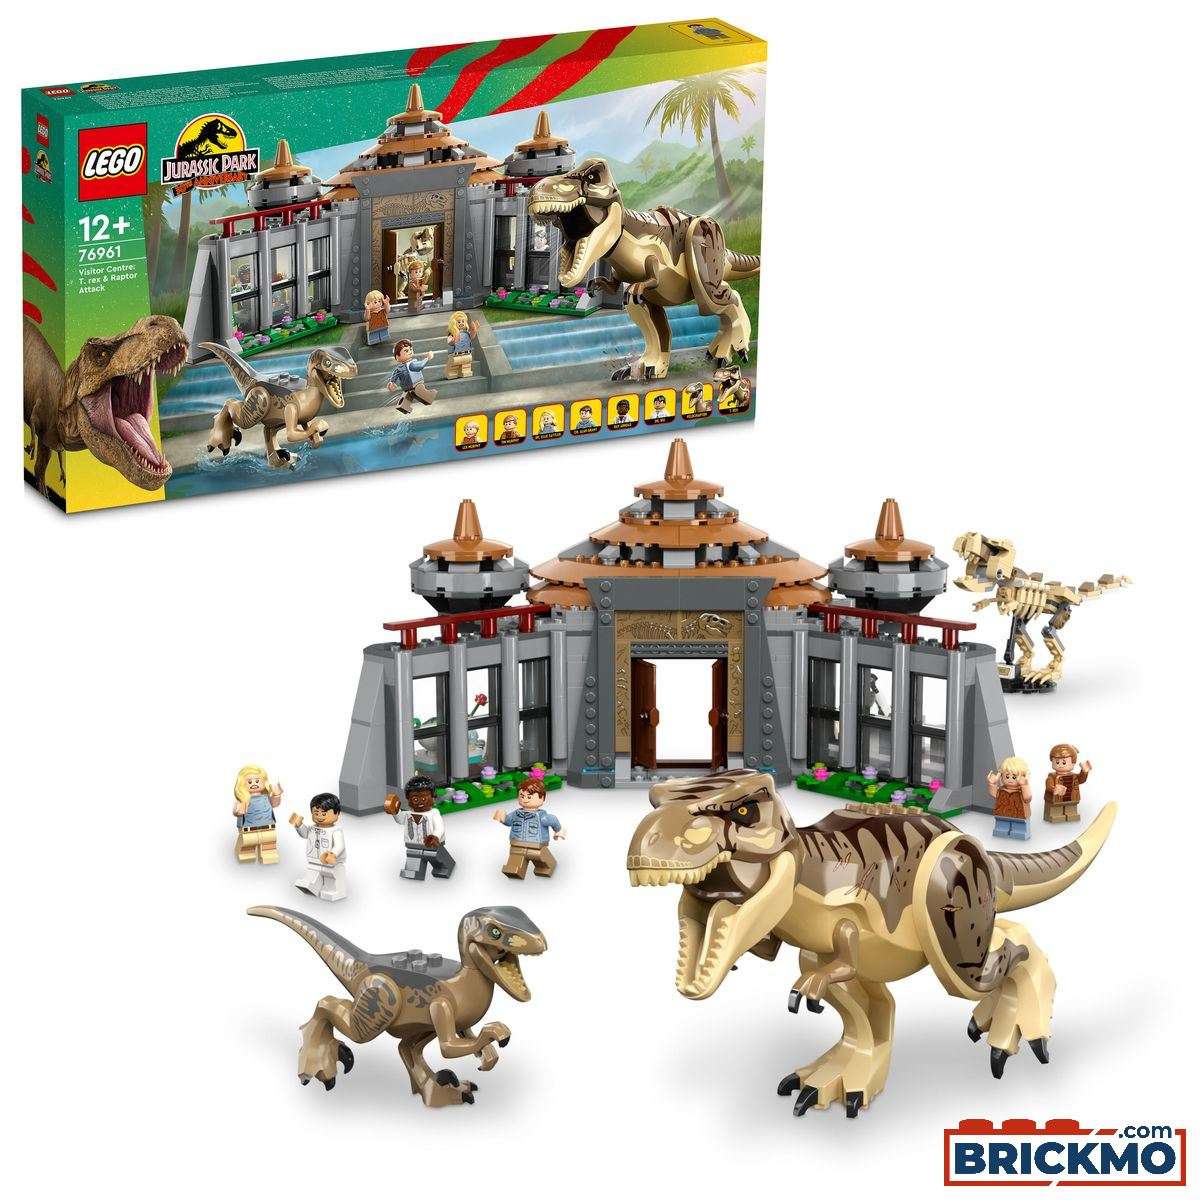 LEGO Jurassic World 76961 Centro de Visitantes: Ataque de T. rex e Raptor 76961